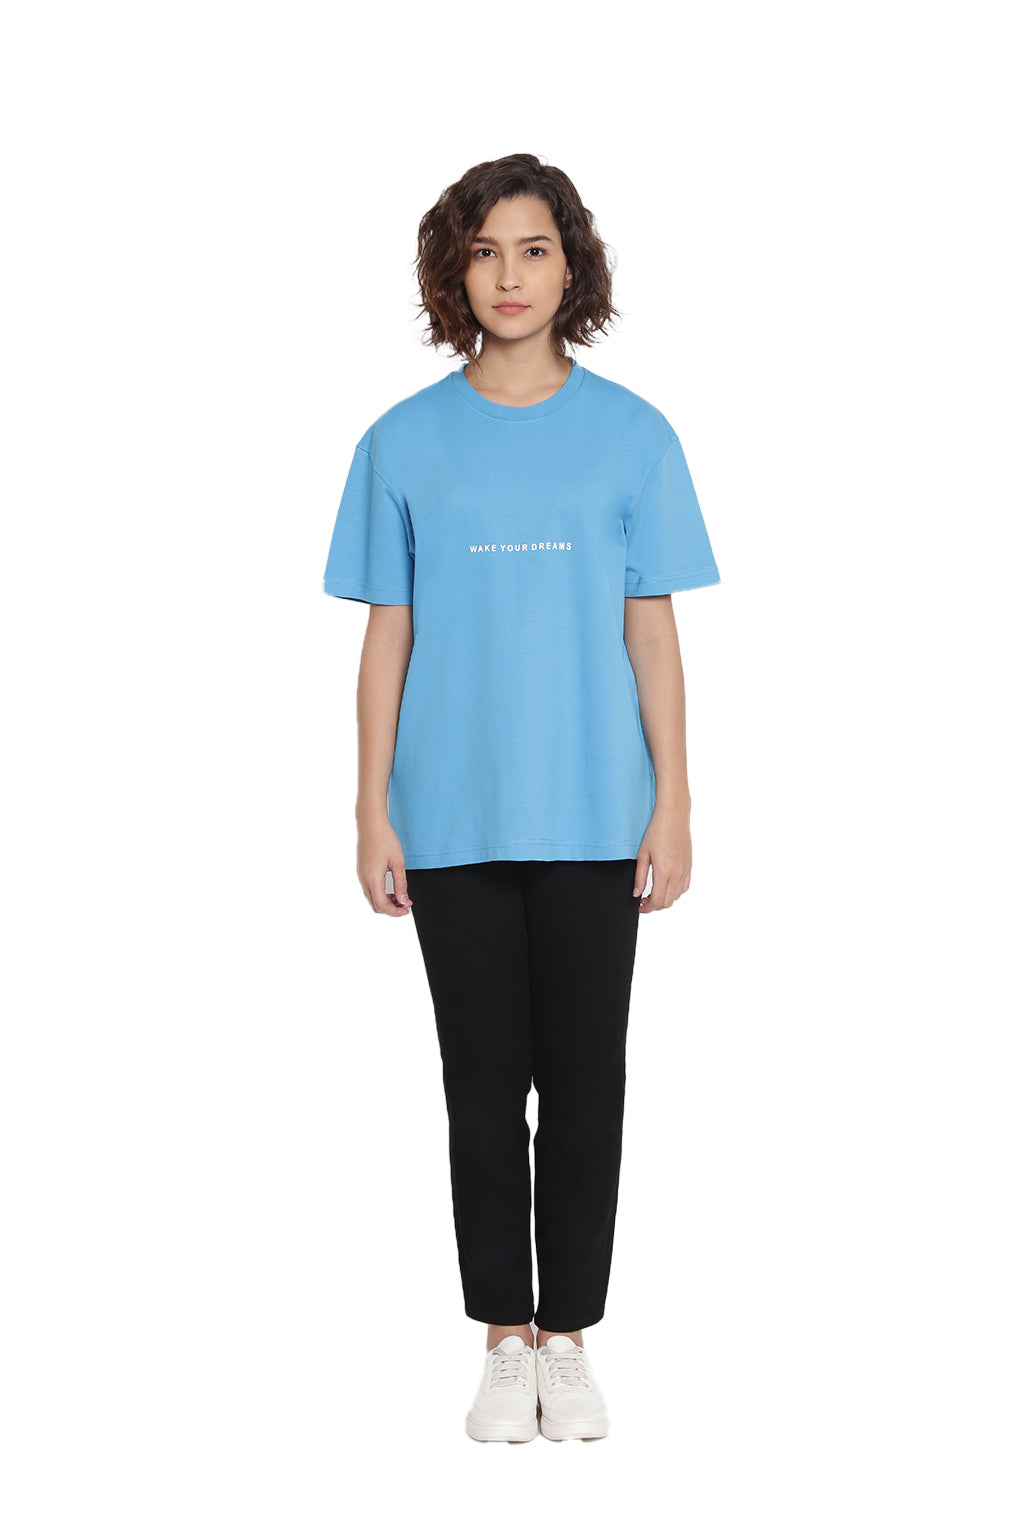 Celeste-Blue-Premium-T-shirts-6